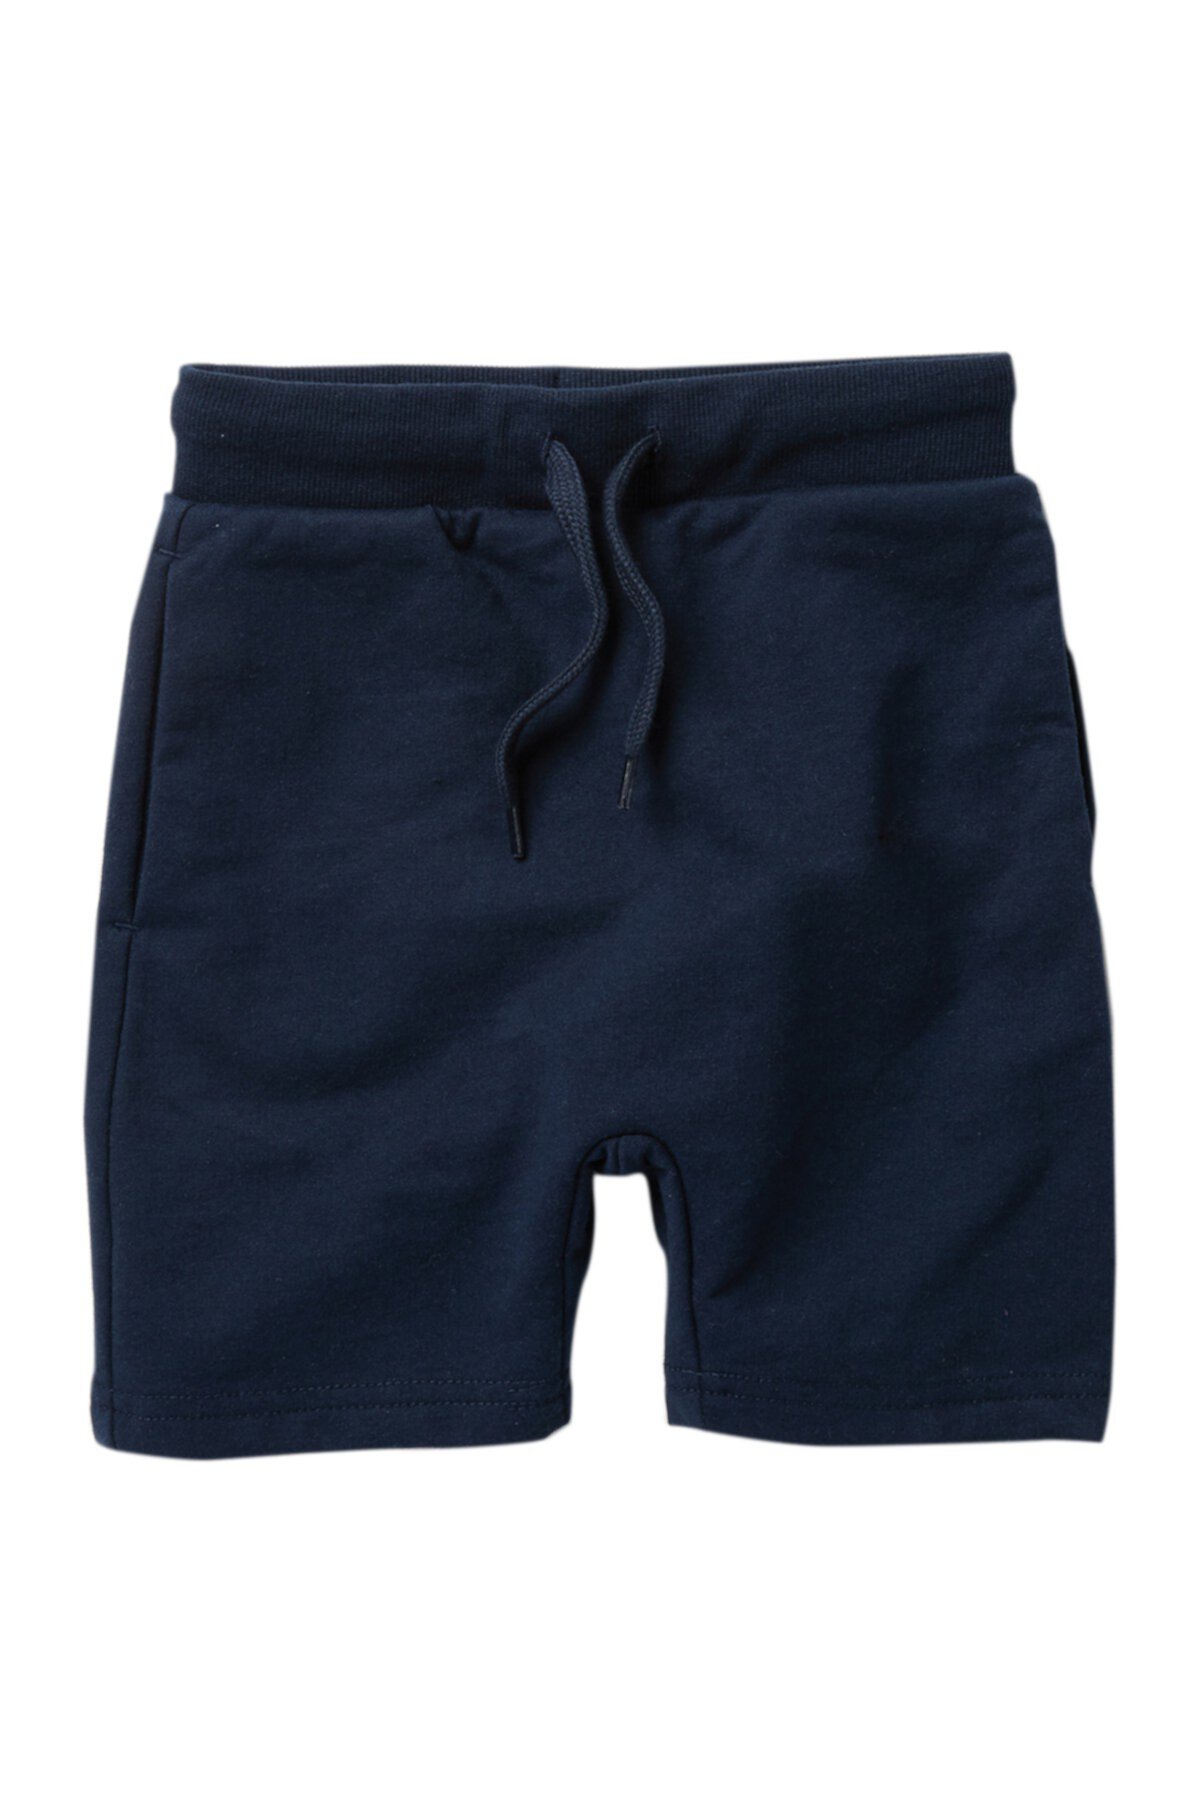 Fry Knit Shorts (Toddler, Little Boys, & Big Boys) Petit Lem